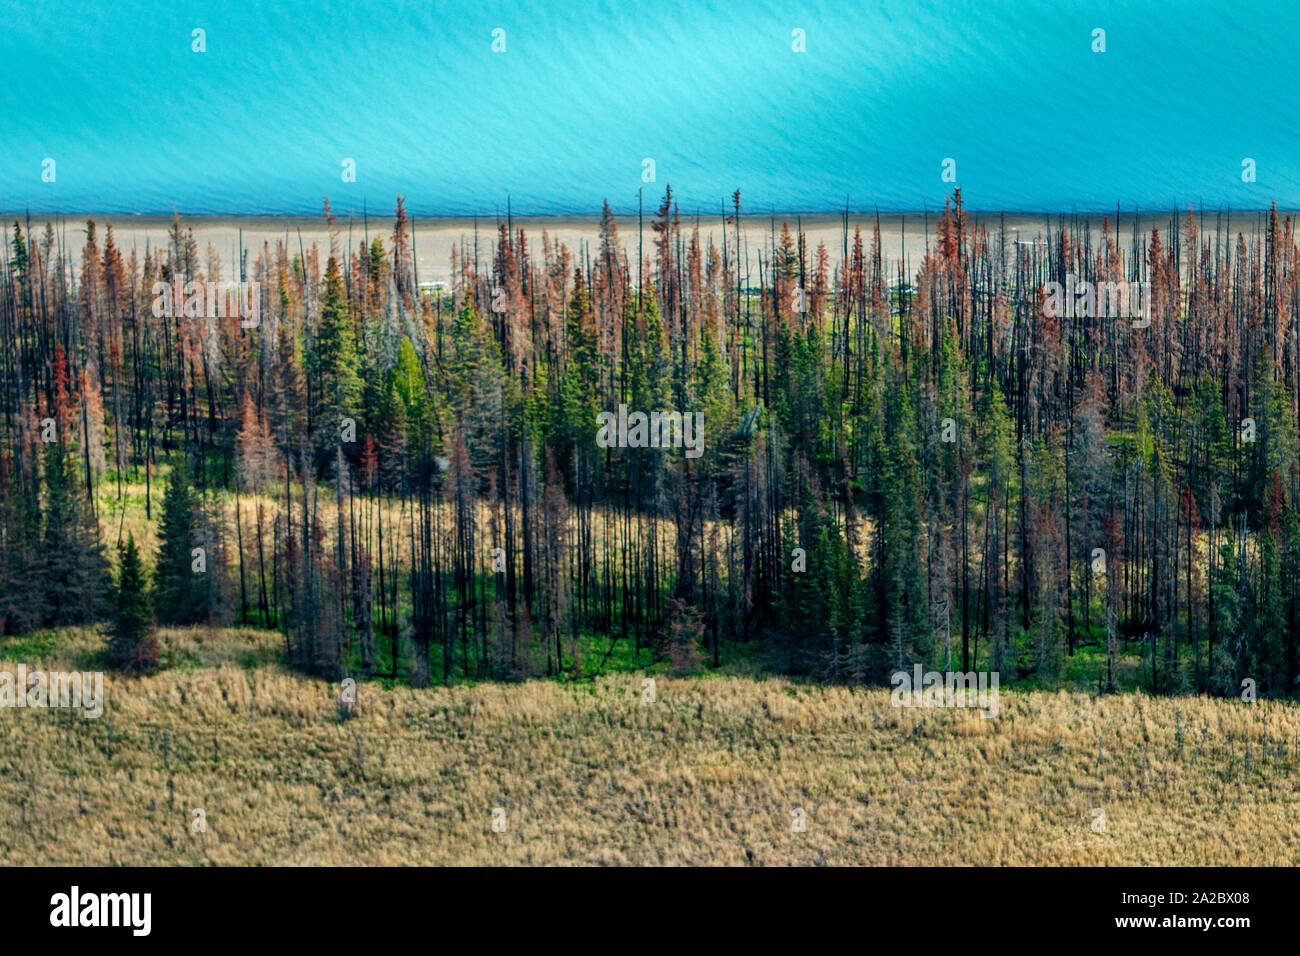 Ein Patch von beschädigten Wald in der Nähe von Anchorage in Alaska. Die Borealis Wald - typischerweise Kiefer, Birke, lärche - machen etwa 30 Prozent aller Wald in der Welt. Weniger effizient als die Regenwälder, ist es immer noch ein wesentlicher Teil der CO2-Senke. Die mittlere Temperatur in den arktischen Gebieten sind bereits 1.5c wärmer als normal. Höhere CO2 beschleunigen das Wachstum des Waldes. Jedoch, wie Wachstum accellerated ist, die Lebensdauer der Bäume wird verkürzt. Das Ergebnis ist eine CO2-gesättigten Wald, der als Kohlenstoffsenke und Emitter. Stockfoto